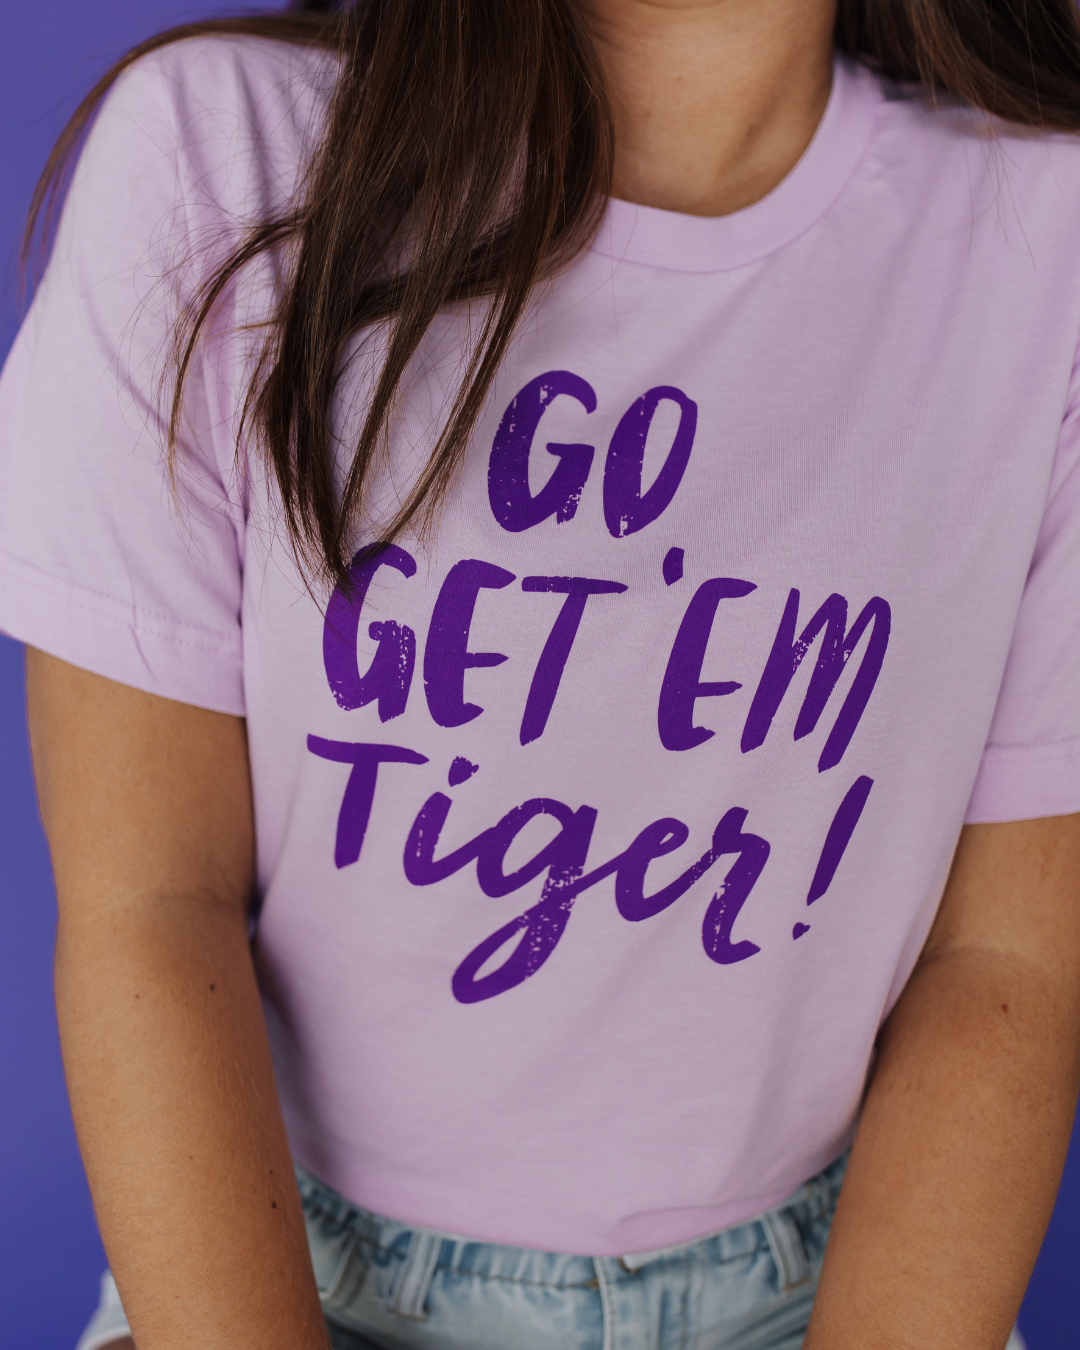 Go Get 'Em Tiger!